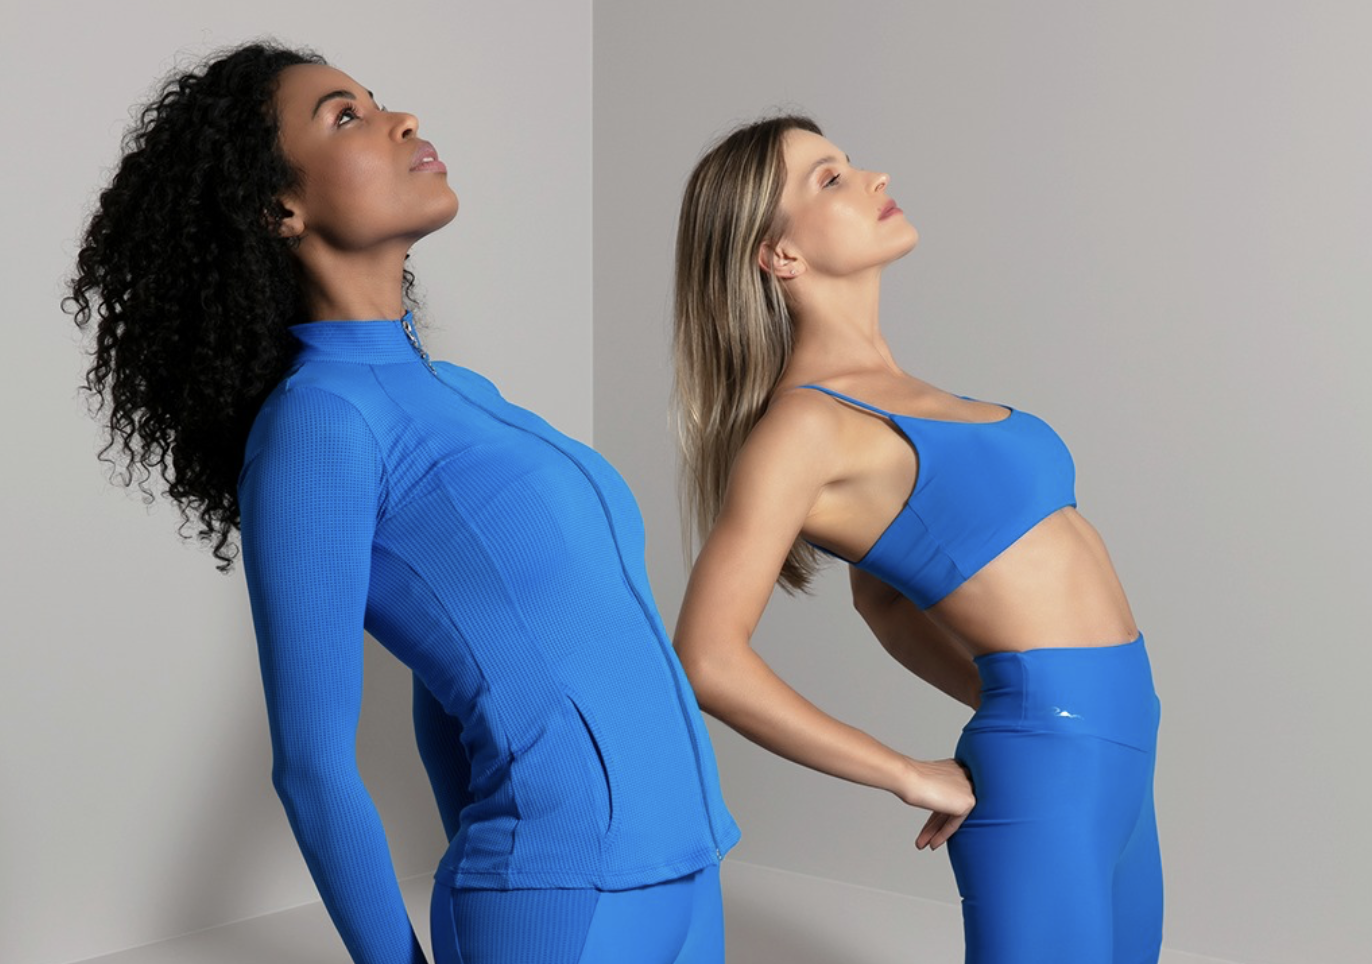 coppia di ragazze in abbigliamento fitness blu elettrico